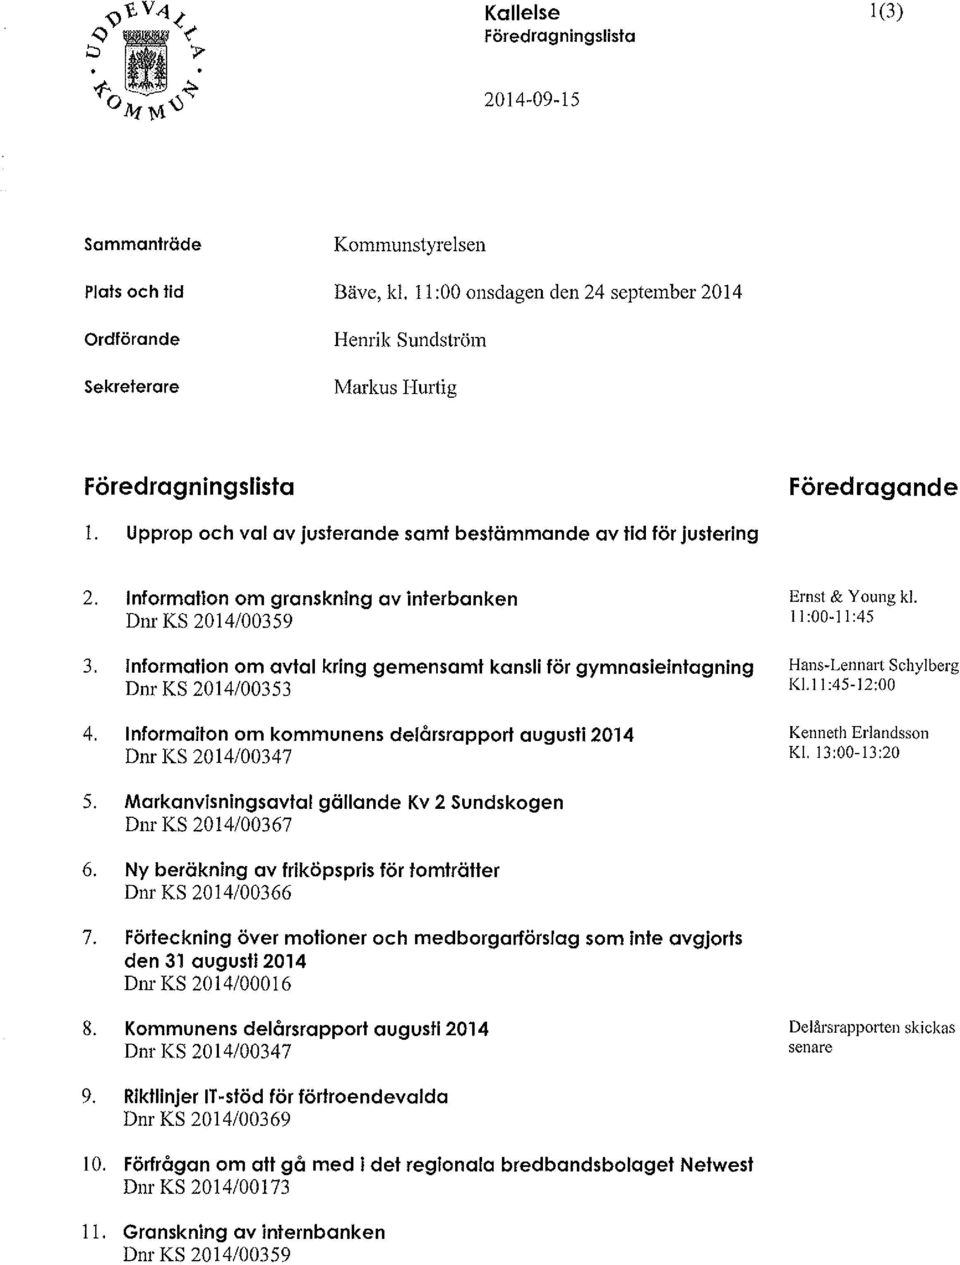 Information om granskning avinterbanken Ernst & Young kl. Dnr KS 2014/00359 11:00-11:45 3.